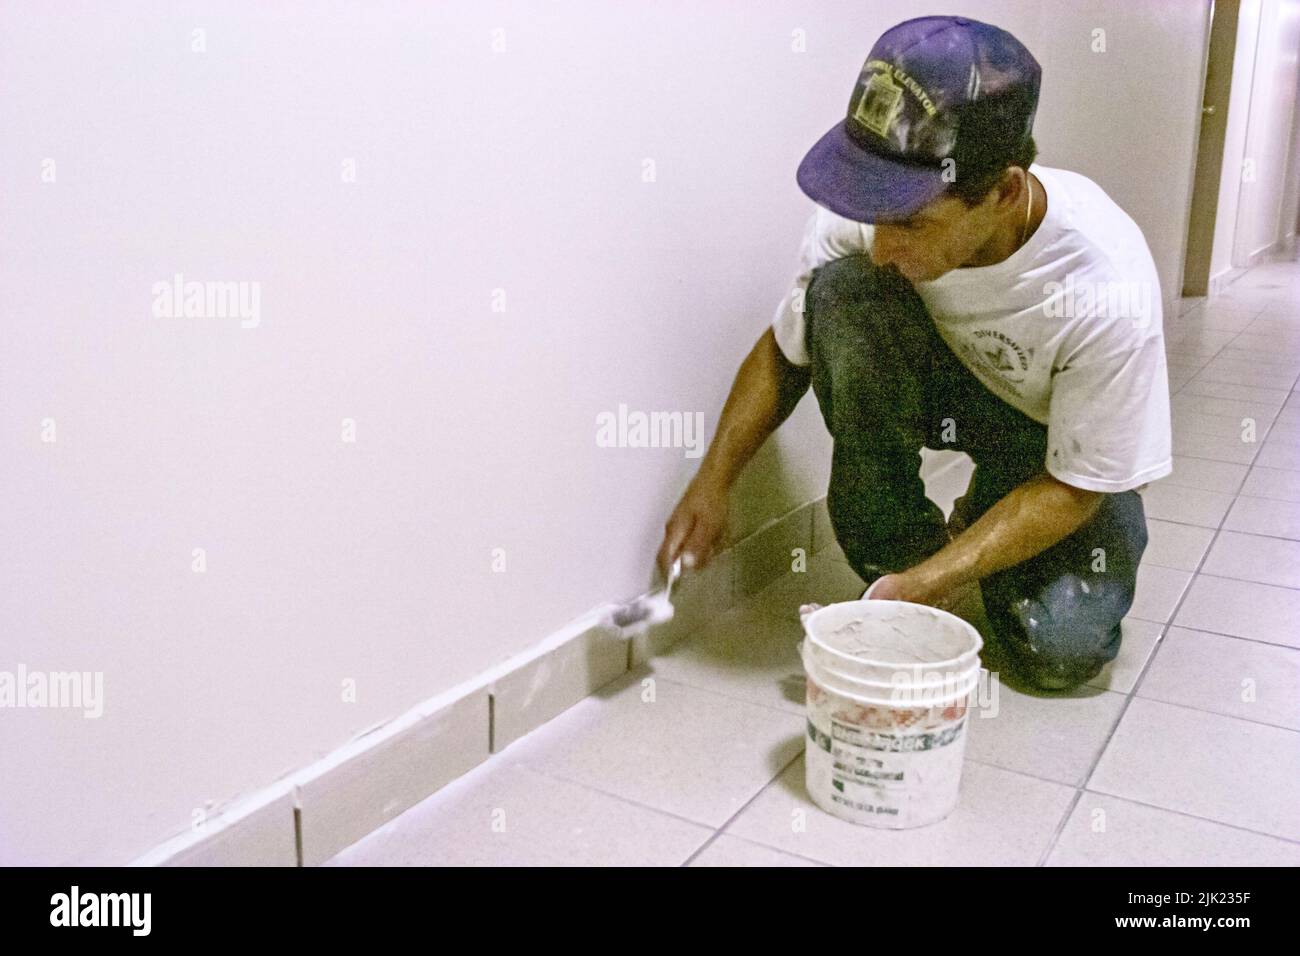 Miami Beach Florida, Hispanic Mann Installierer Installation neuer Fliesen innerhalb der Innenkondominium Eigentumswohnung Wohn-Apartment Gebäude Flur Arbeiter arbeiten Stockfoto